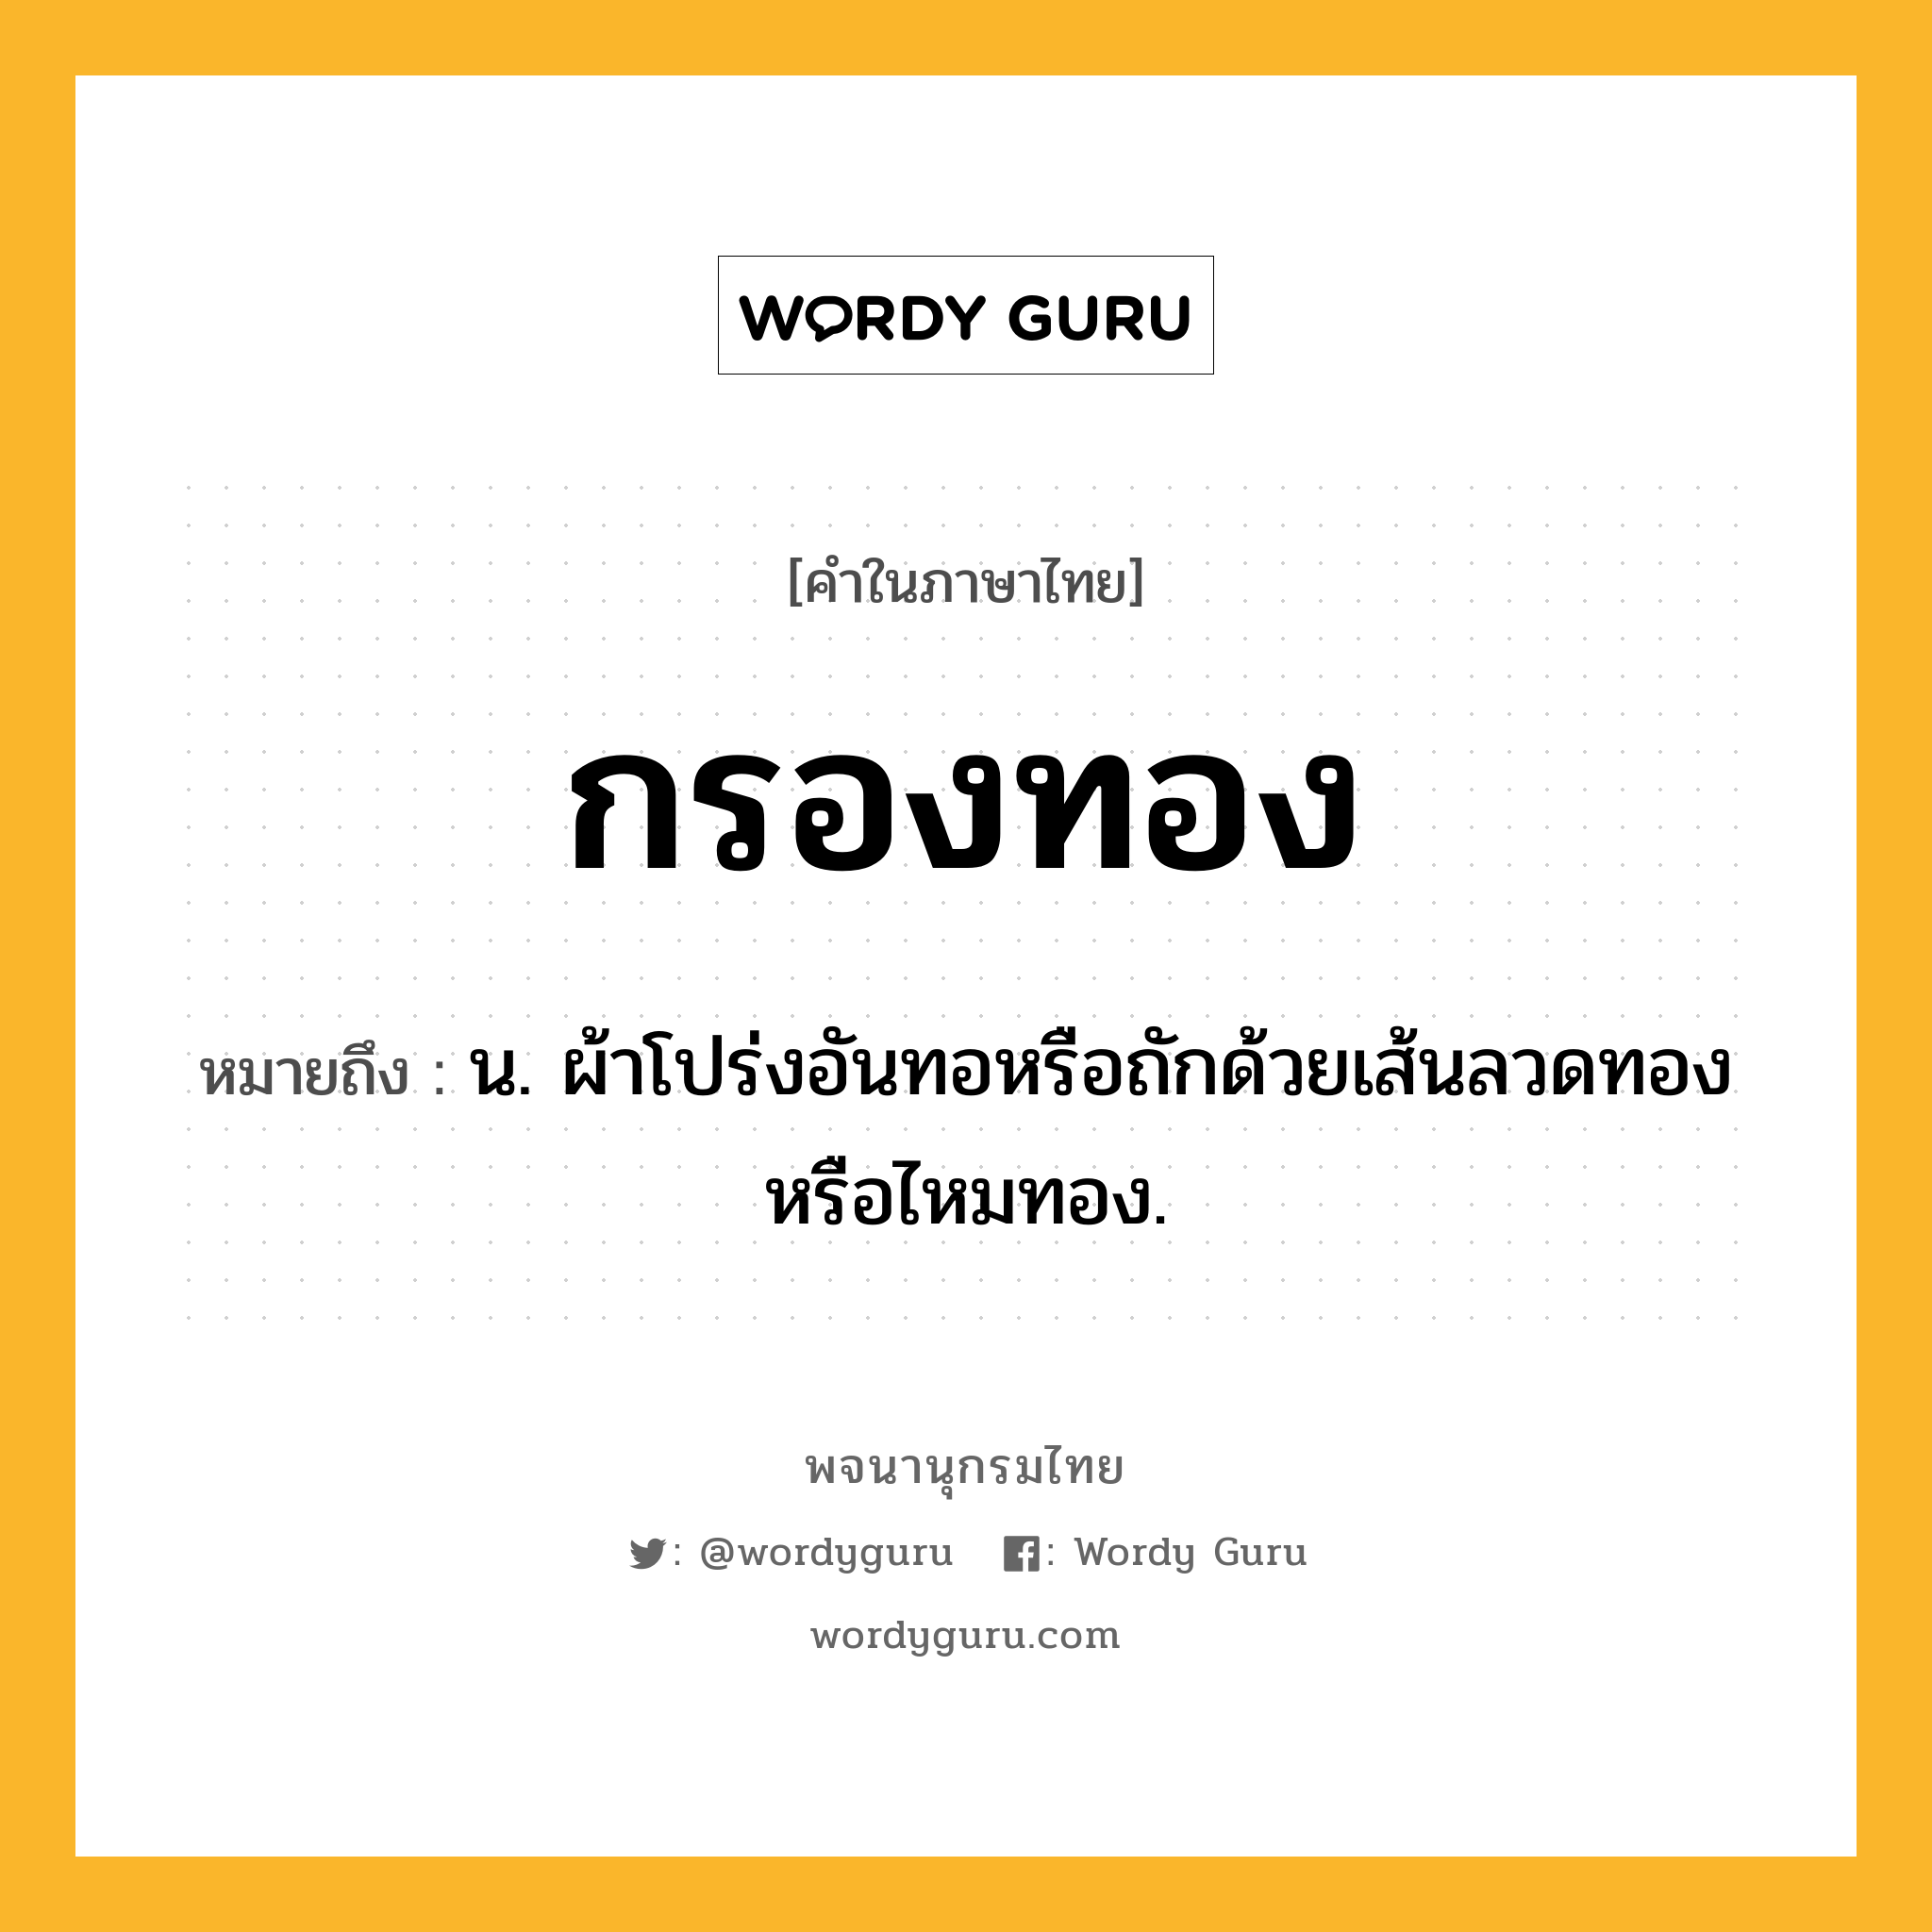 กรองทอง ความหมาย หมายถึงอะไร?, คำในภาษาไทย กรองทอง หมายถึง น. ผ้าโปร่งอันทอหรือถักด้วยเส้นลวดทองหรือไหมทอง.